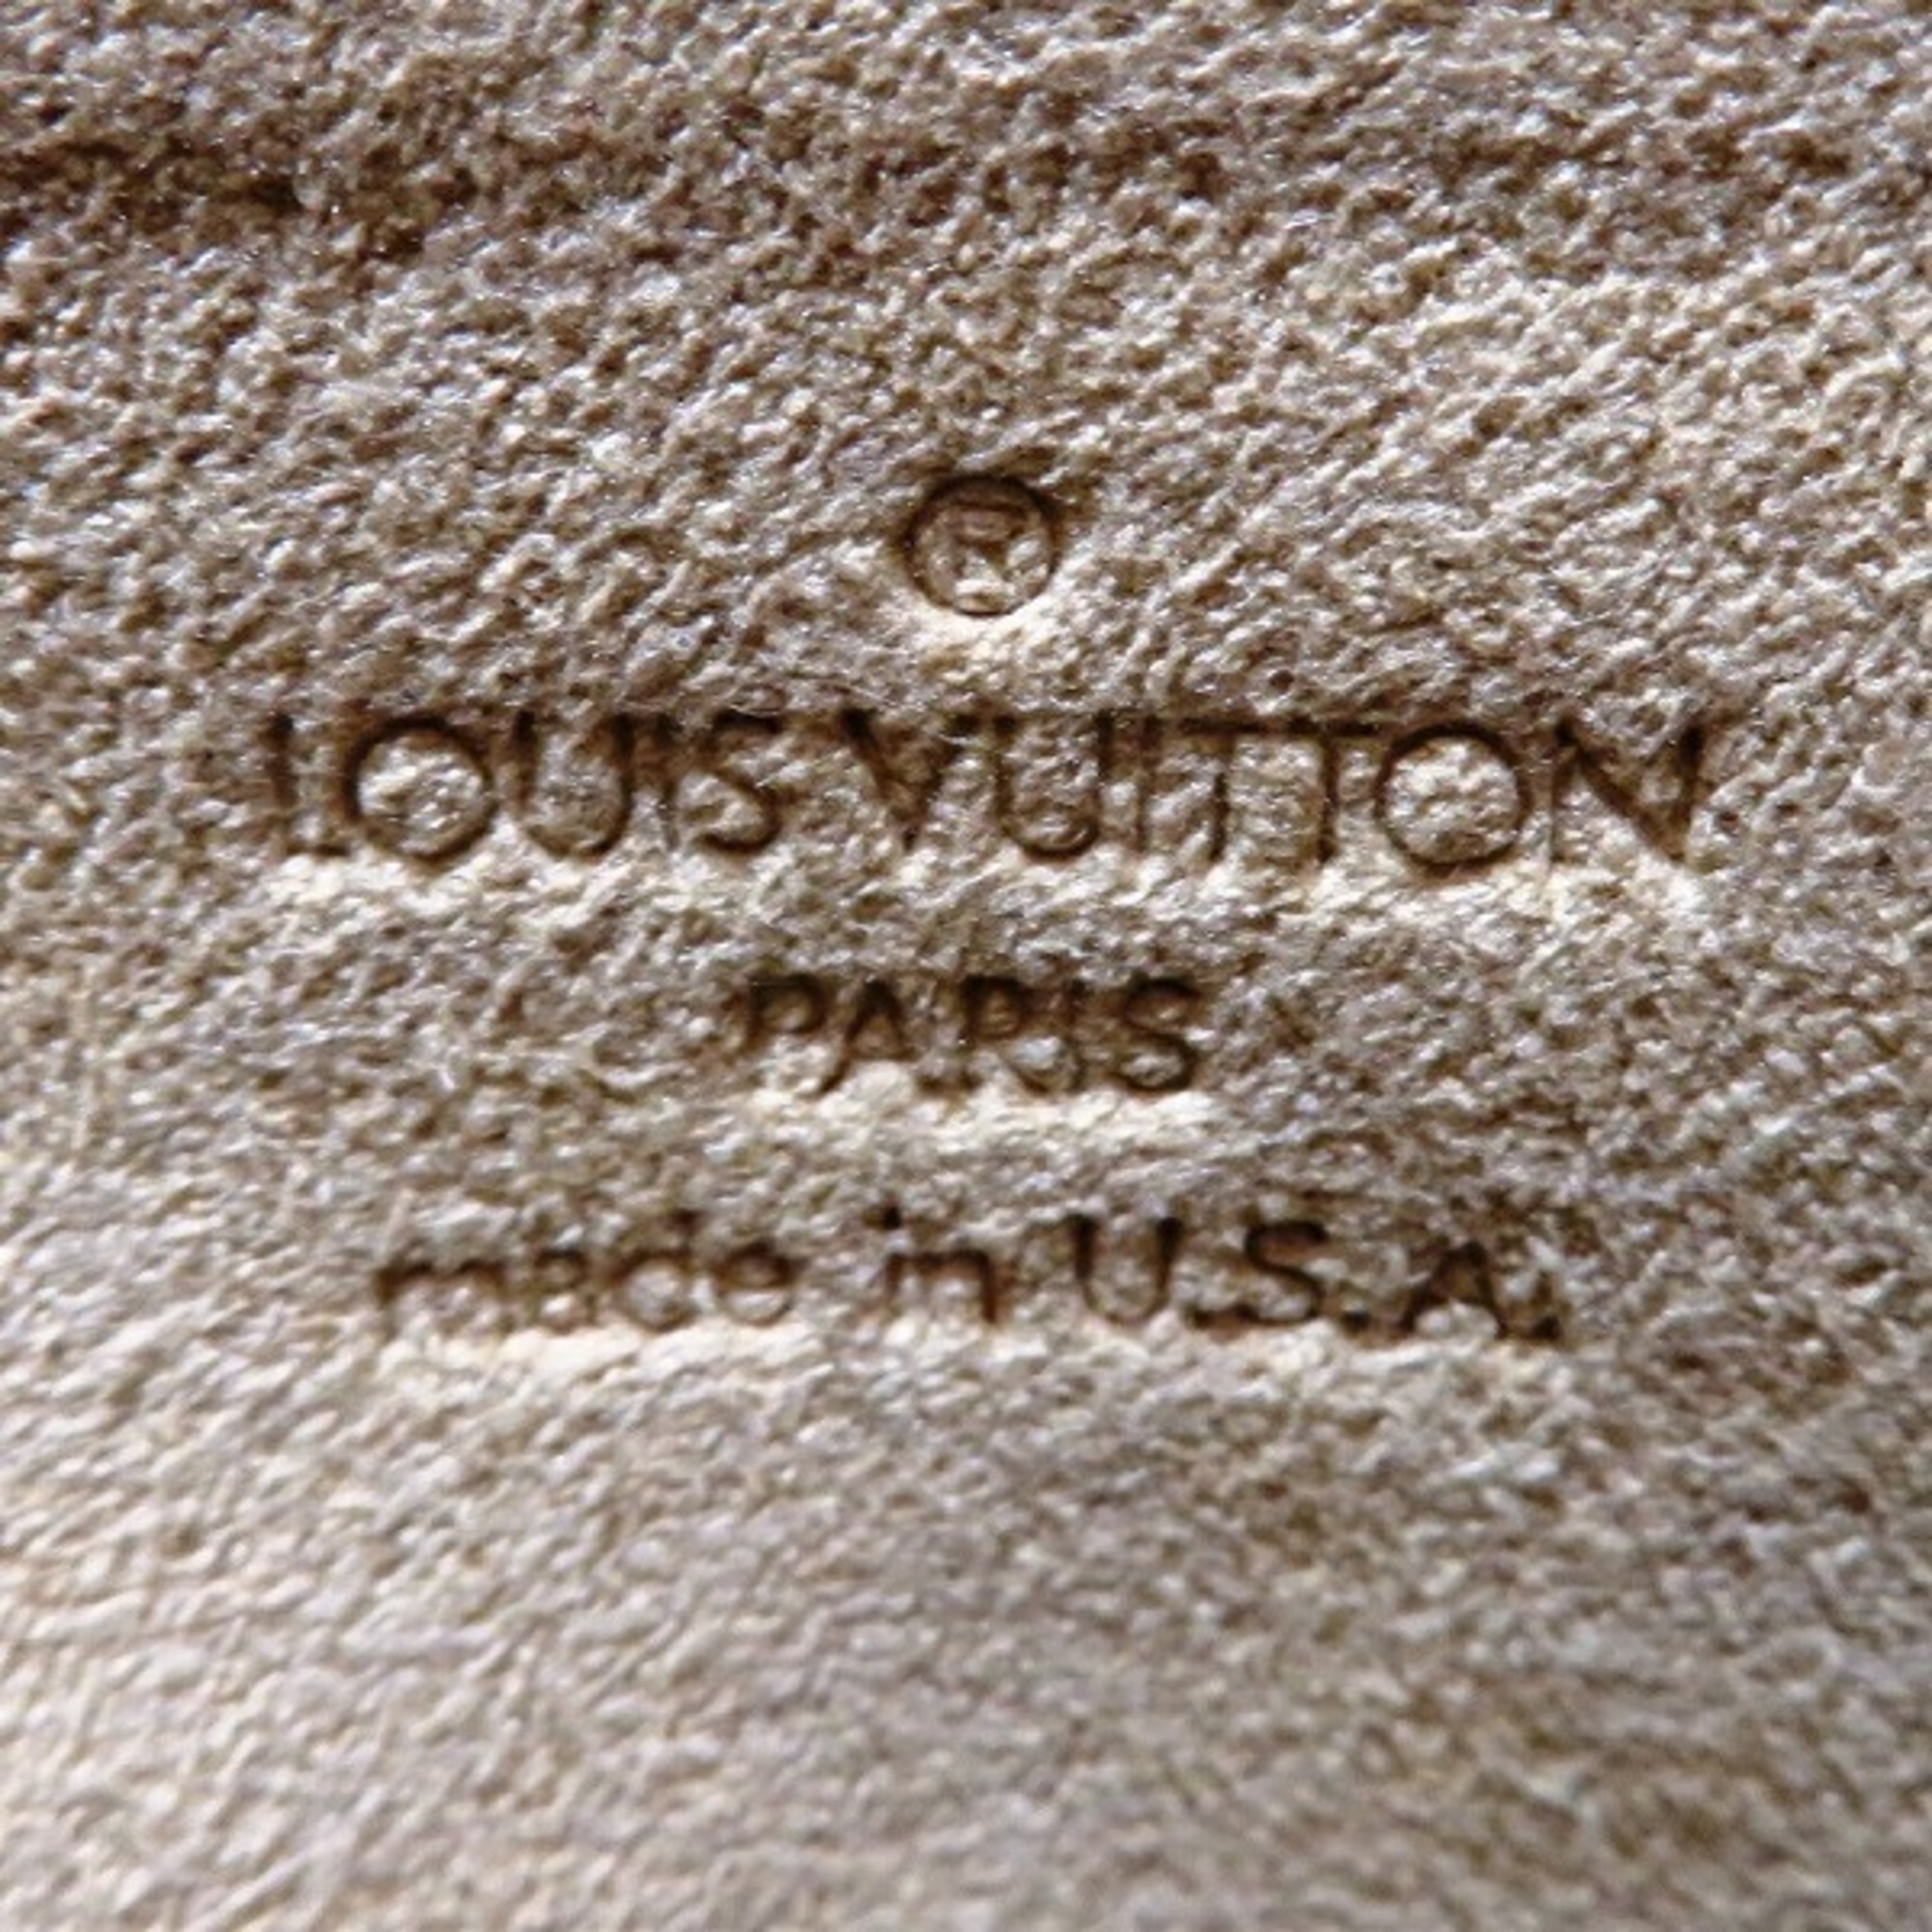 Louis Vuitton Monogram Pochette Twin GM M51852 Bag Shoulder Clutch Ladies